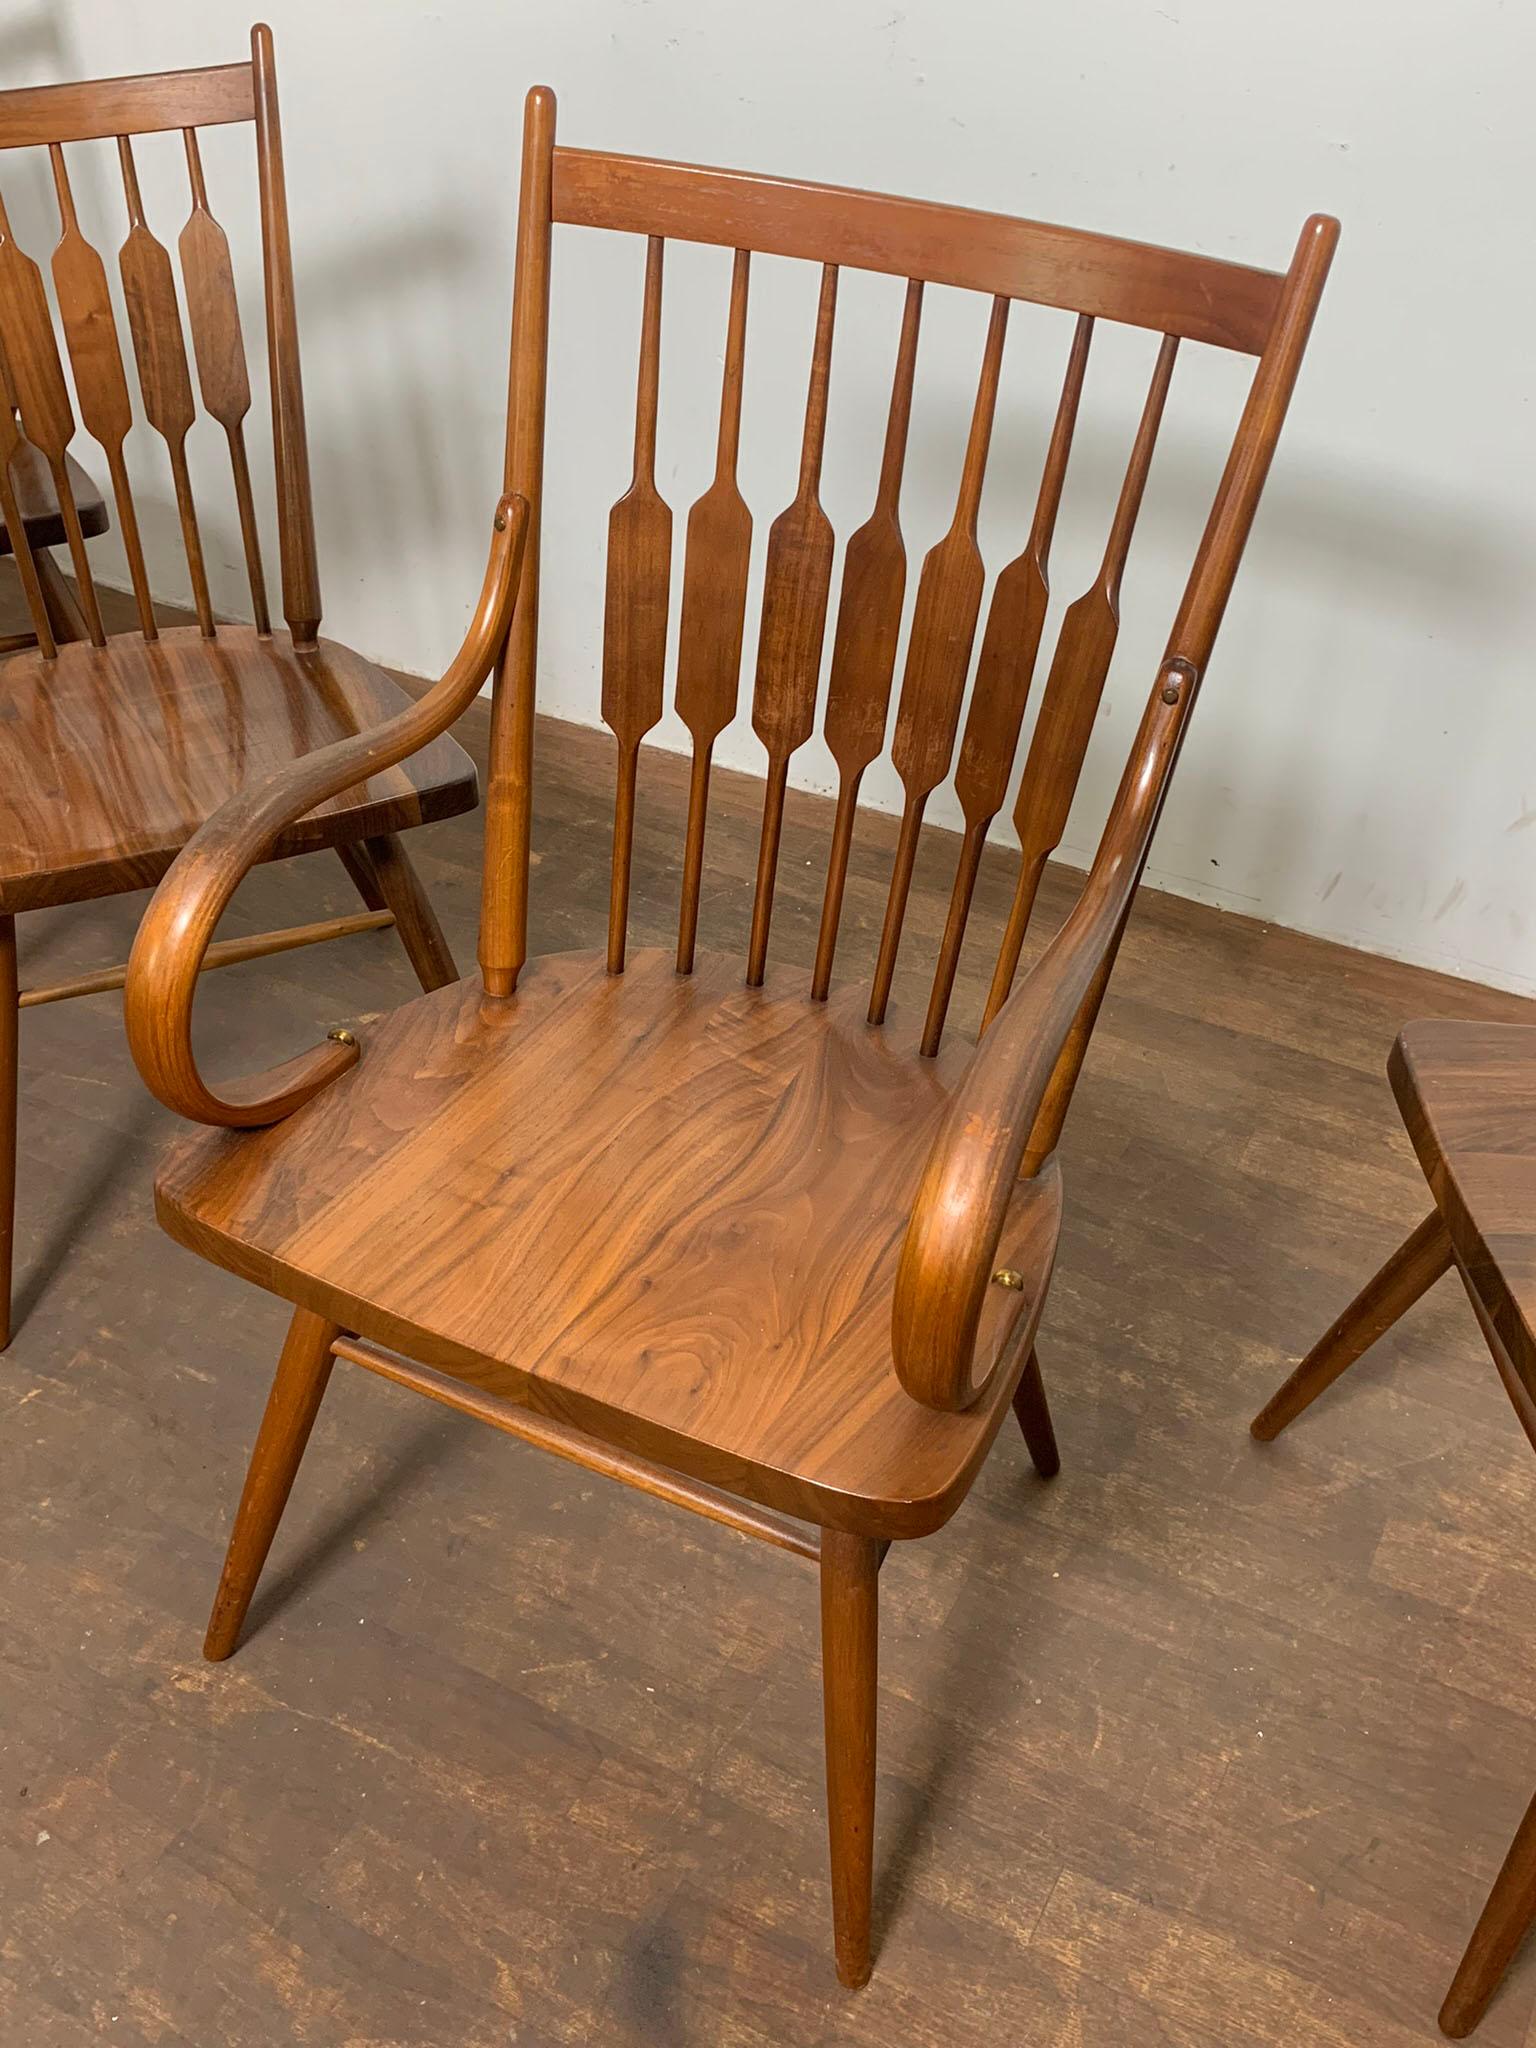 Satz von fünf Esszimmerstühlen aus Nussbaumholz, entworfen von Stewart MacDougall & Kipp Stewart für die Drexel Centennial Line, ca. 1960er Jahre.

Sessel messen 21